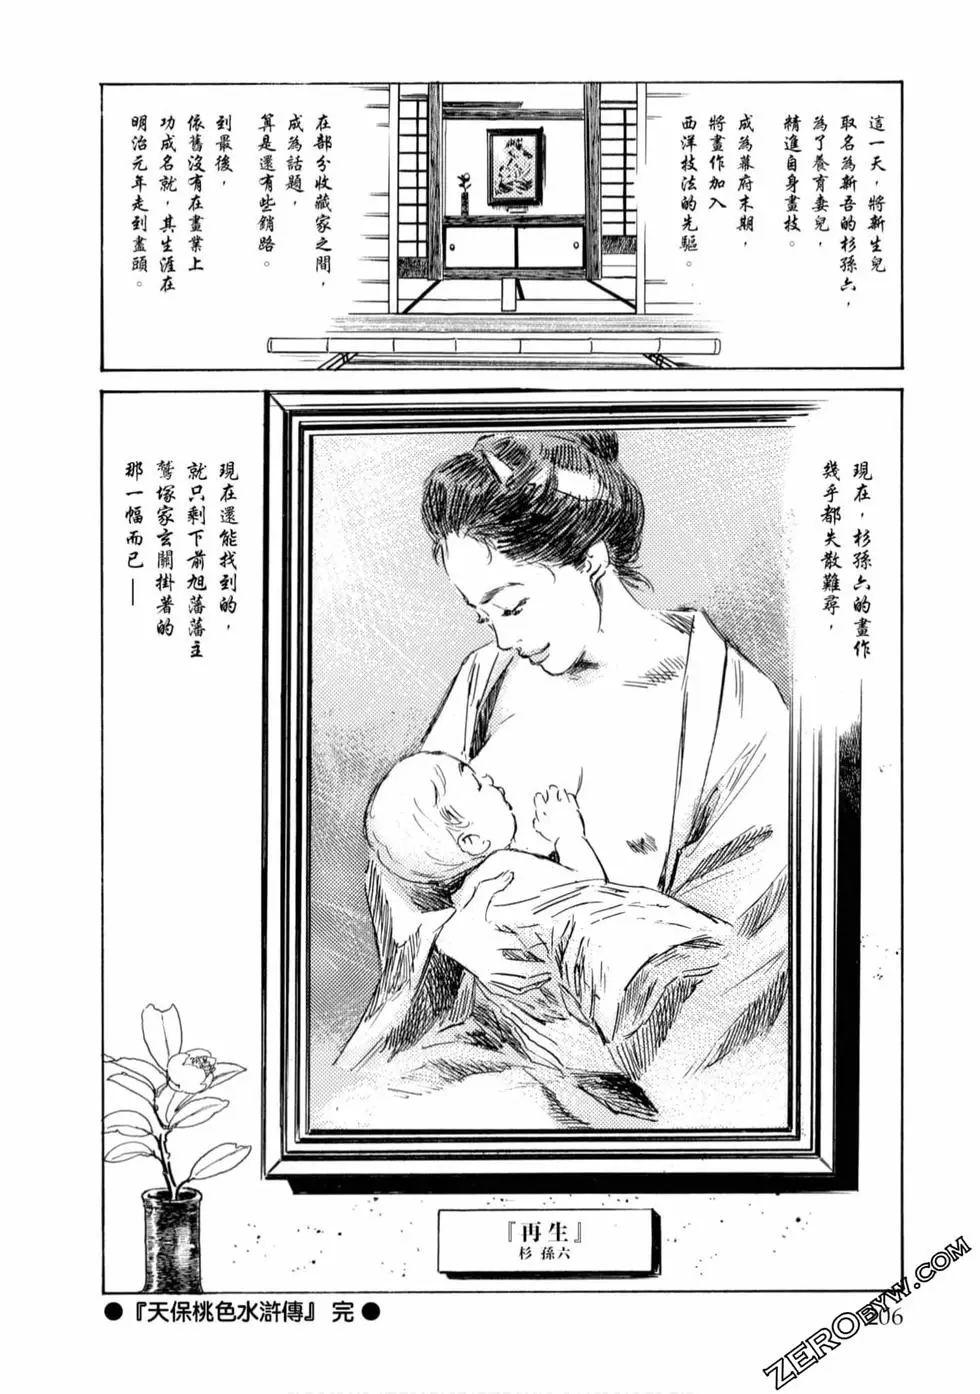 Publico Tenpou Momoiro Suikoden 4 Cream - Page 207